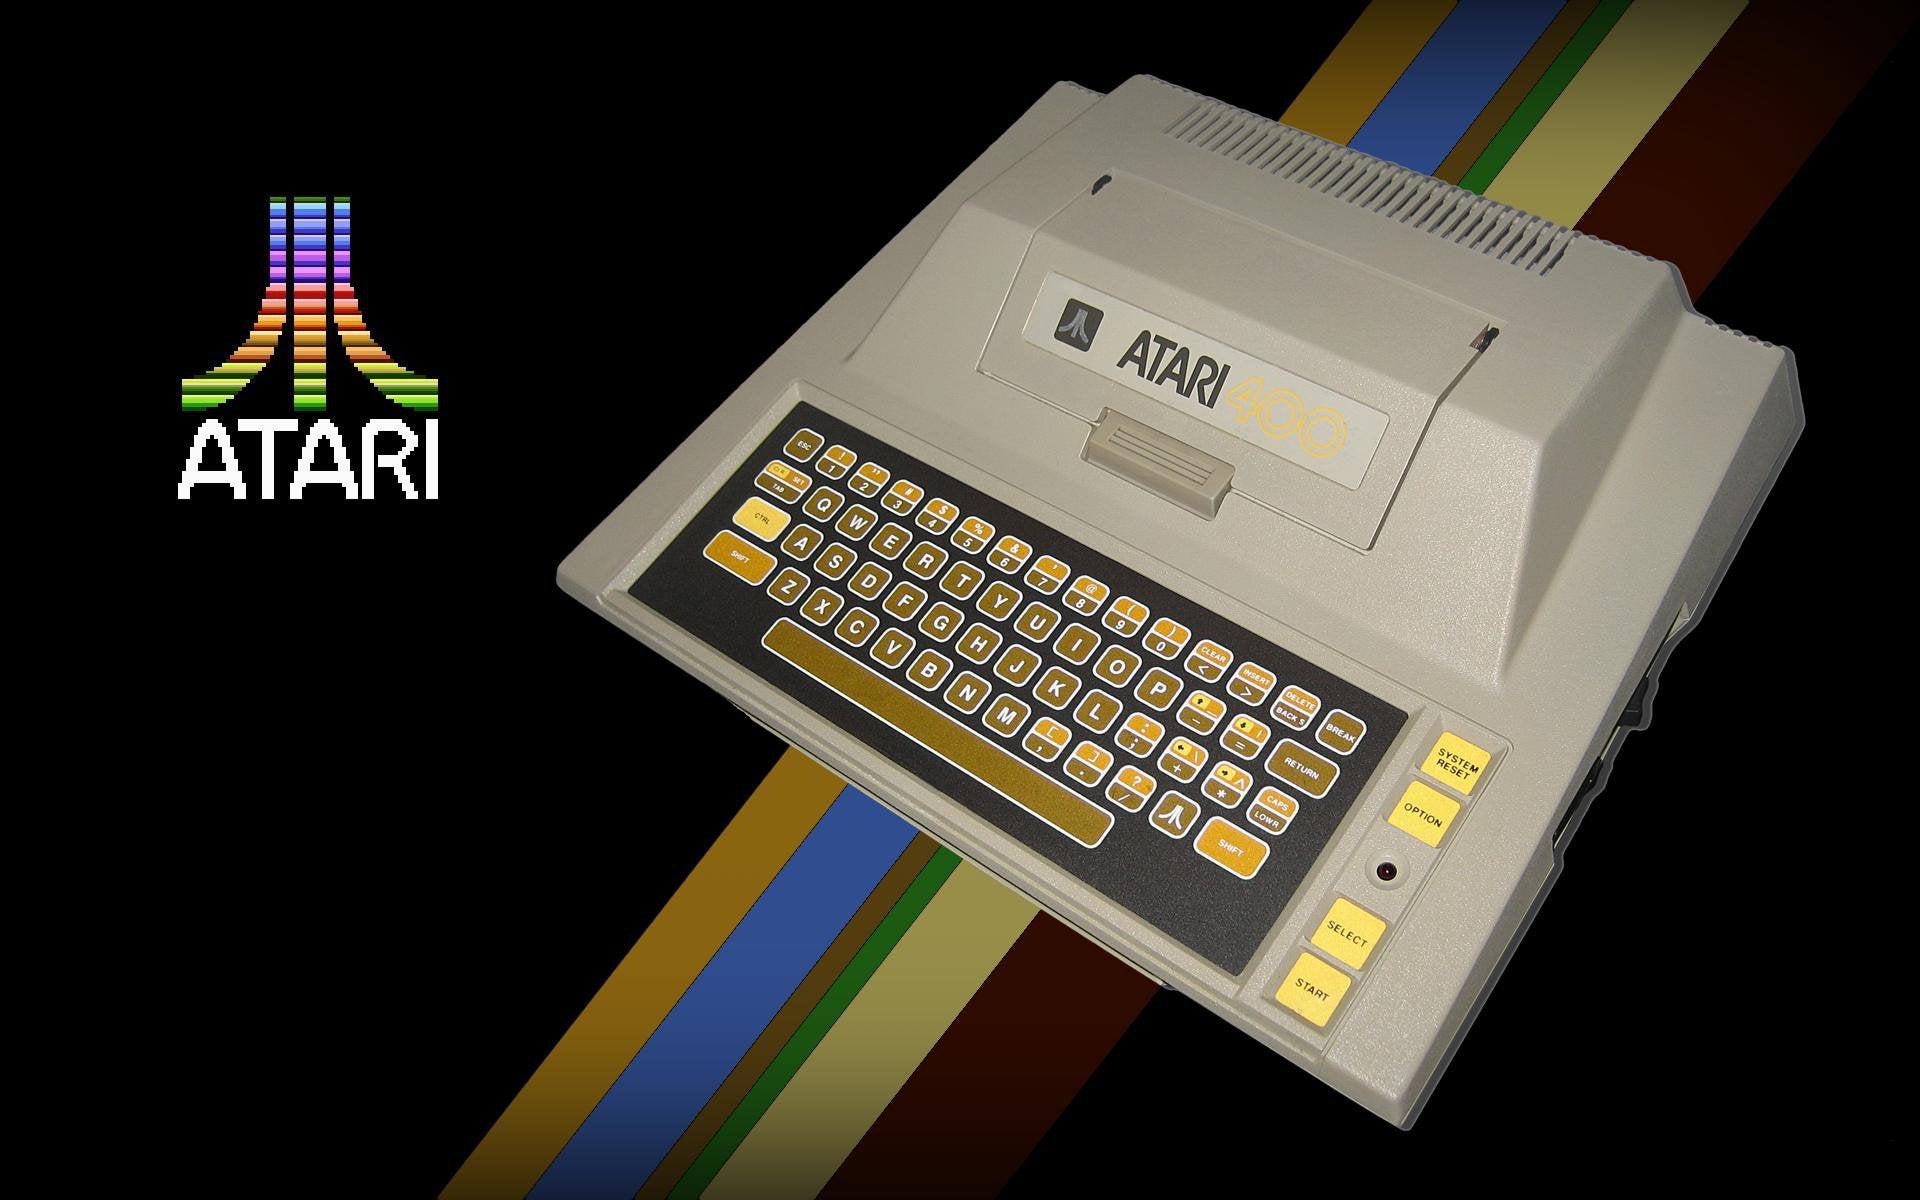 Atari 400 Wallpapers